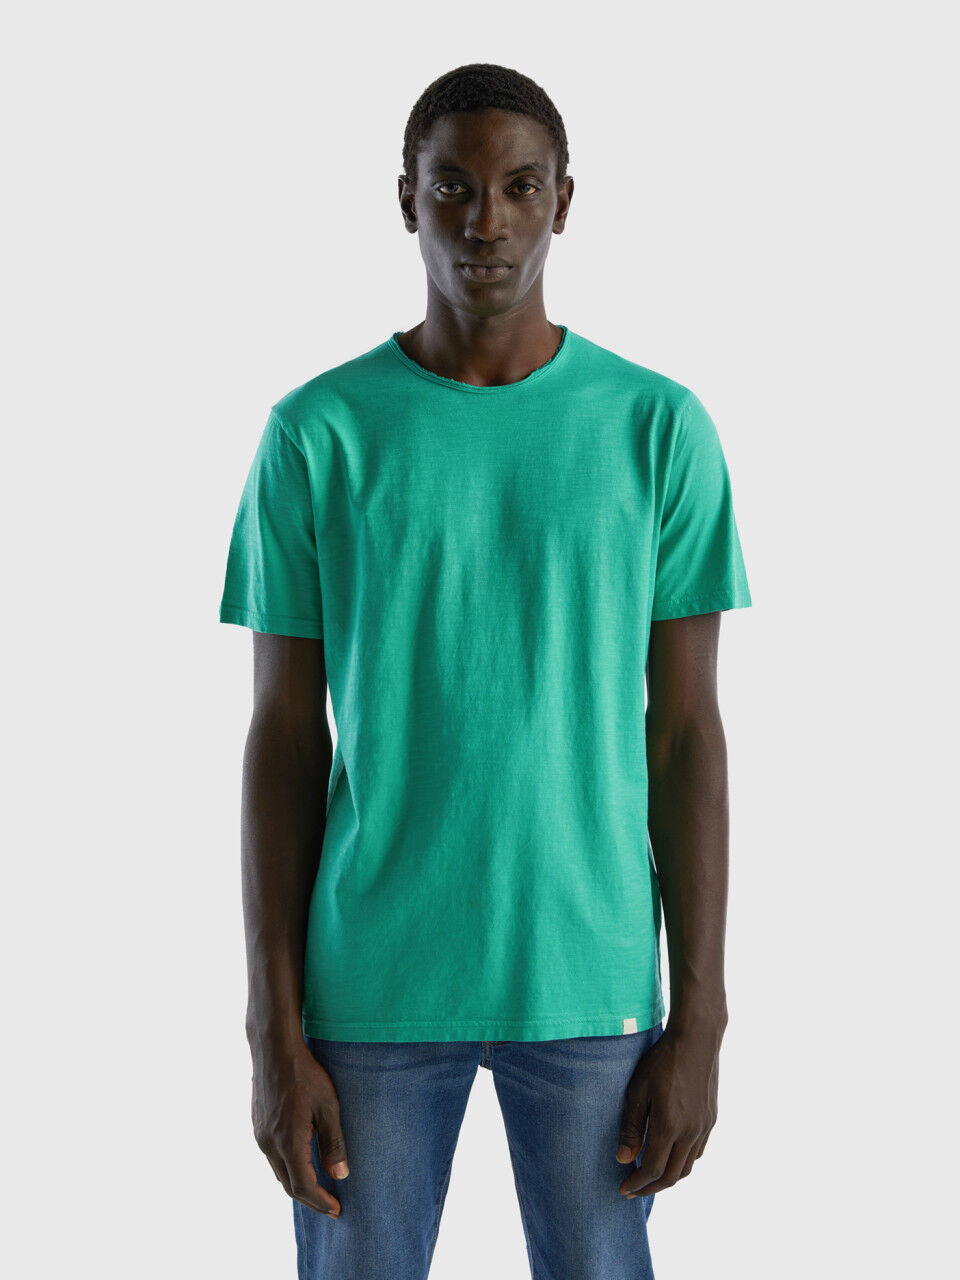 Camiseta verde de algodón flameado